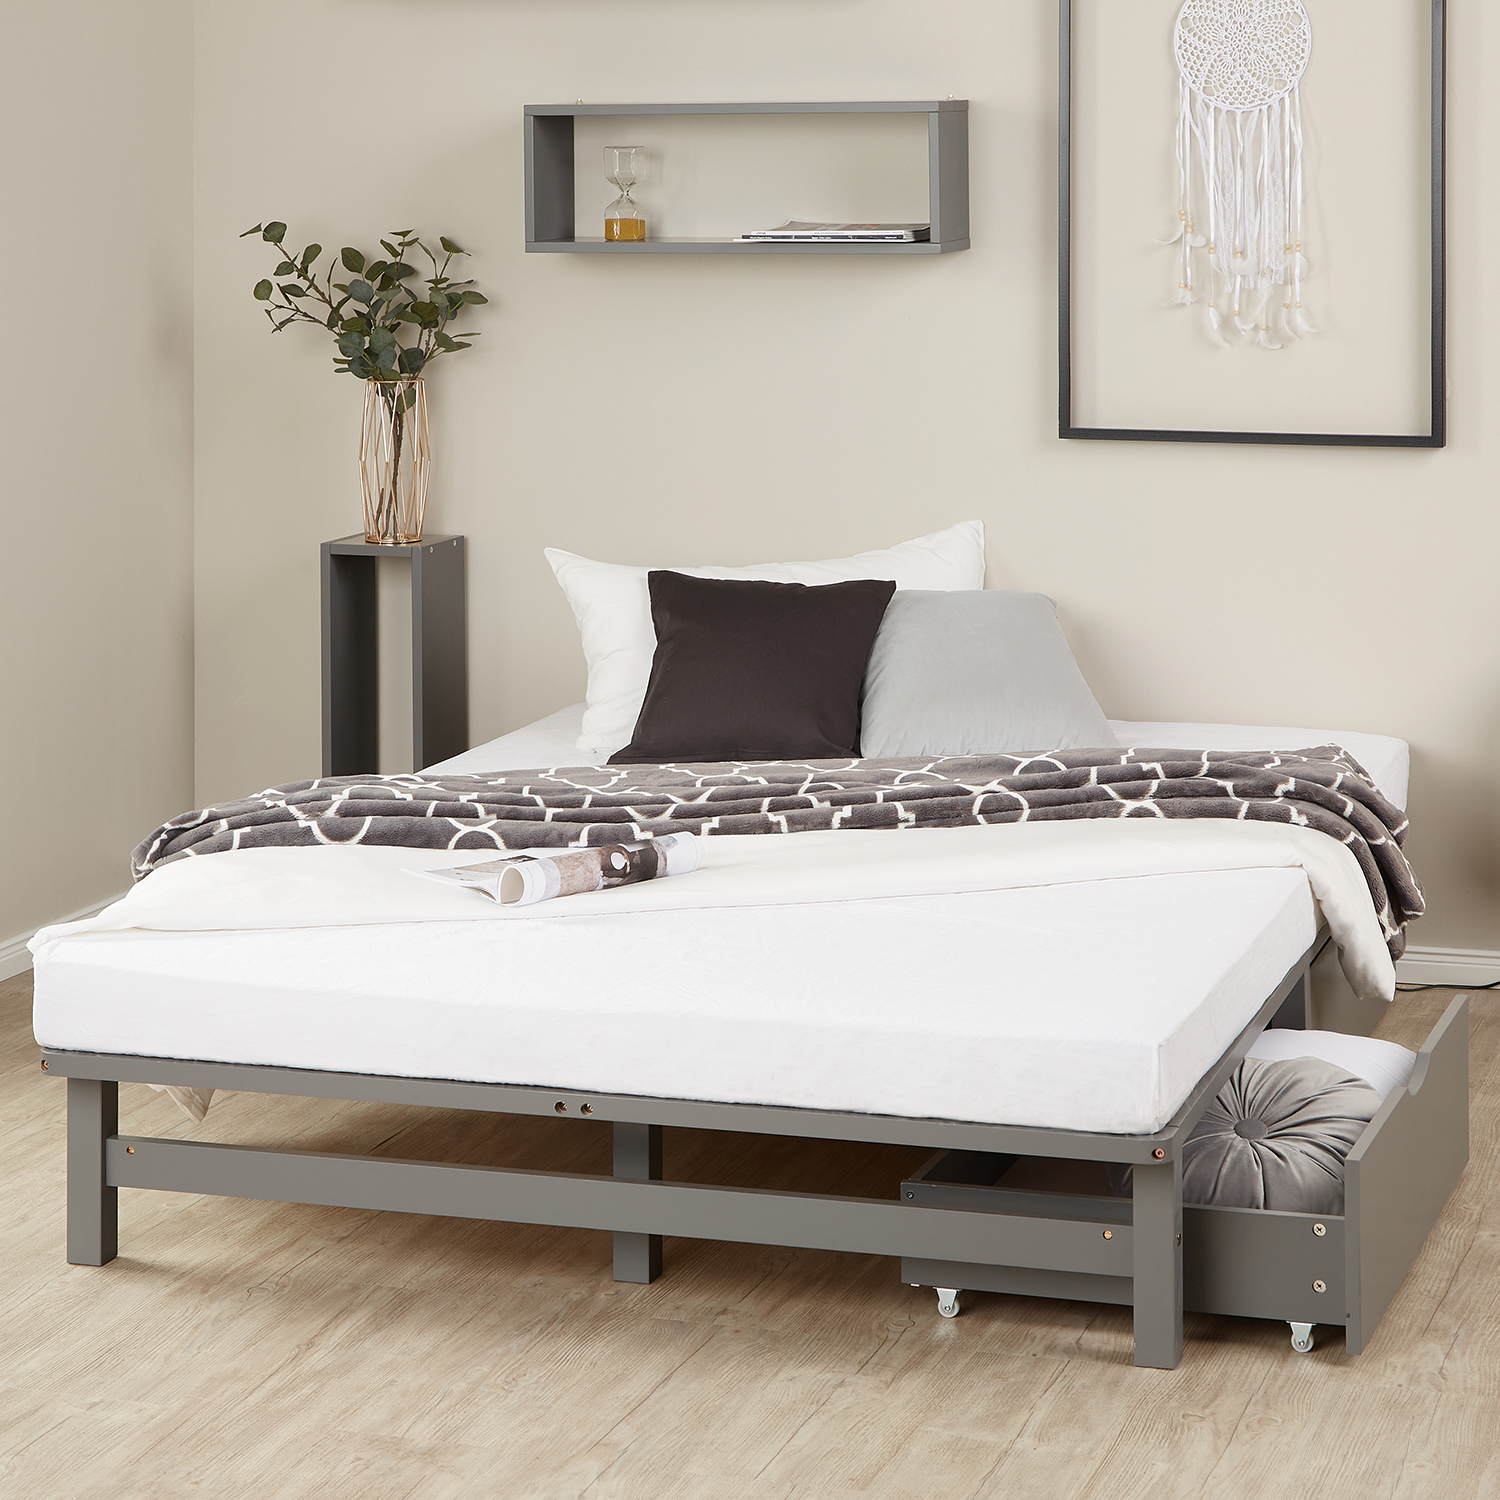 Palettenbett 140x200 cm mit Bettkasten 2er Set Lattenrost Holzbett Palettenmöbel Bett